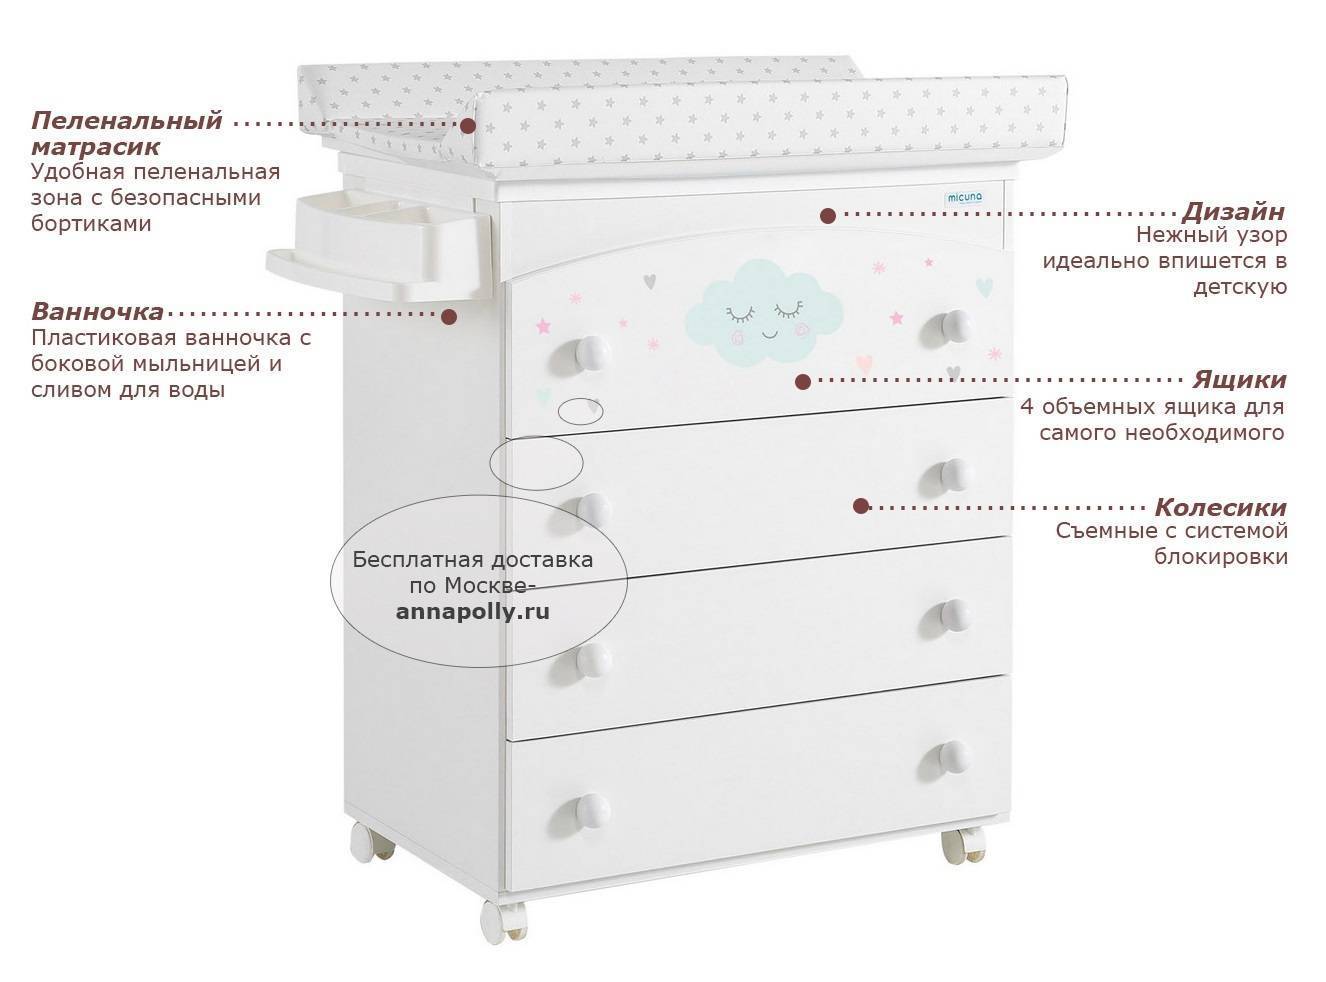 Кровати-трансформеры с пеленальным столиком для новорожденных — обзор моделей